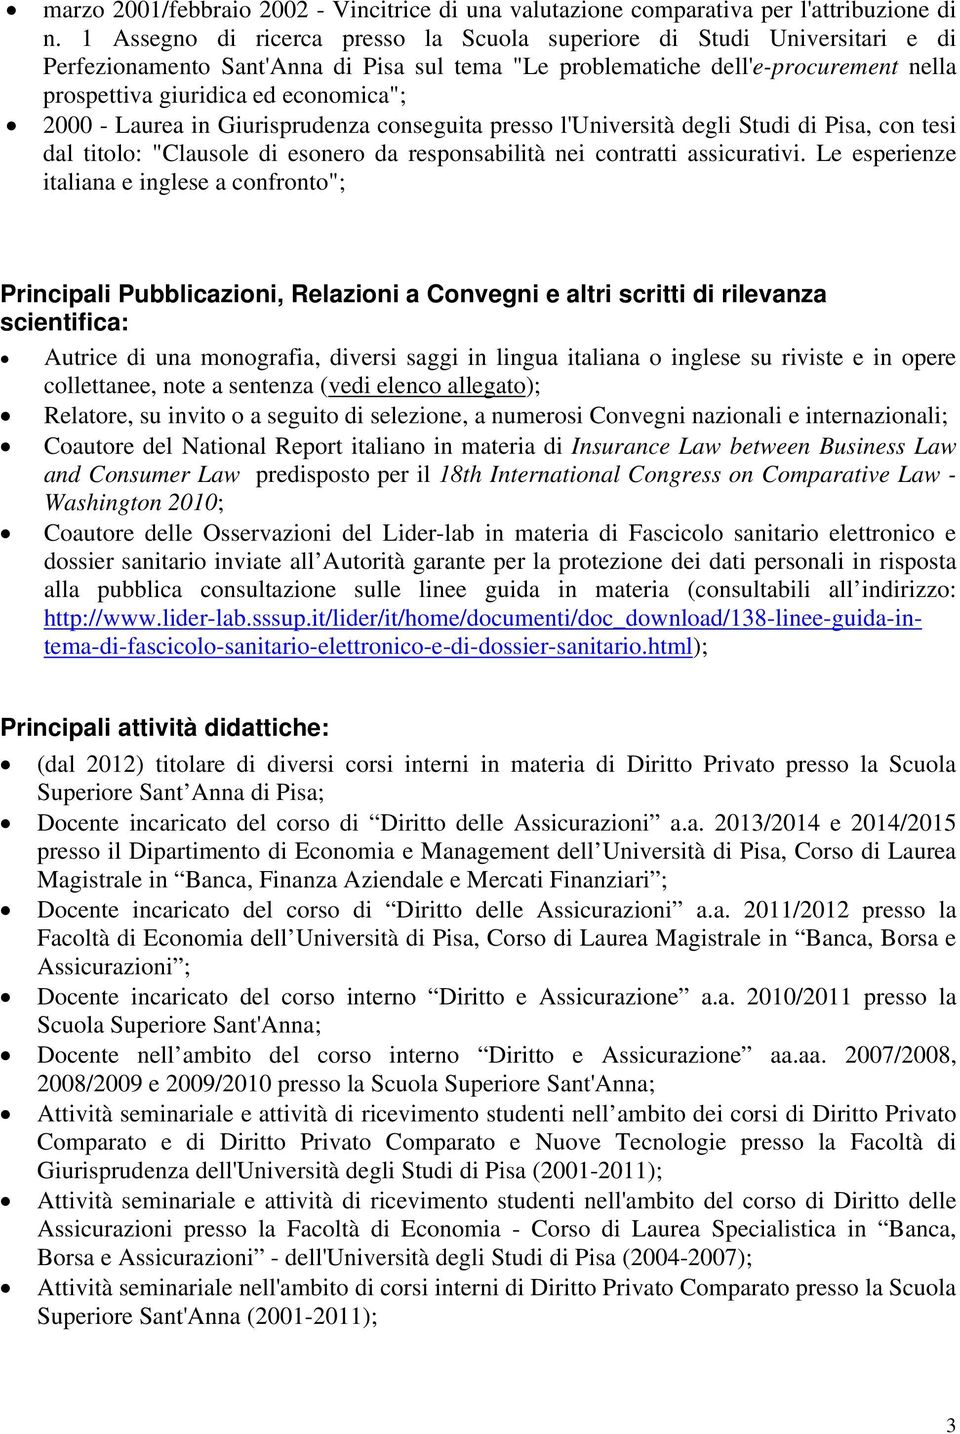 2000 - Laurea in Giurisprudenza conseguita presso l'università degli Studi di Pisa, con tesi dal titolo: "Clausole di esonero da responsabilità nei contratti assicurativi.